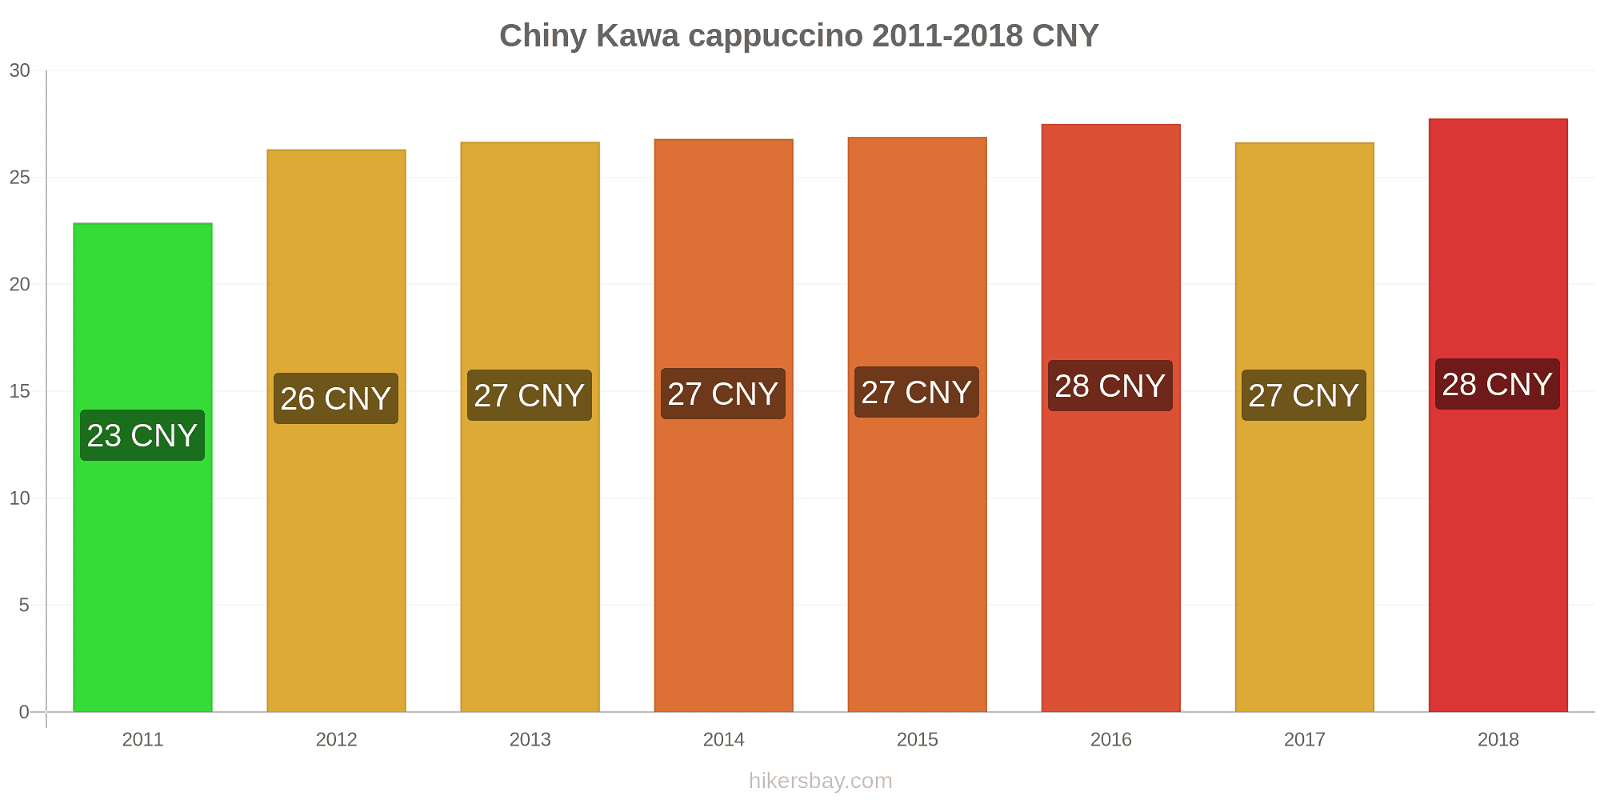 Chiny zmiany cen Kawa cappuccino hikersbay.com